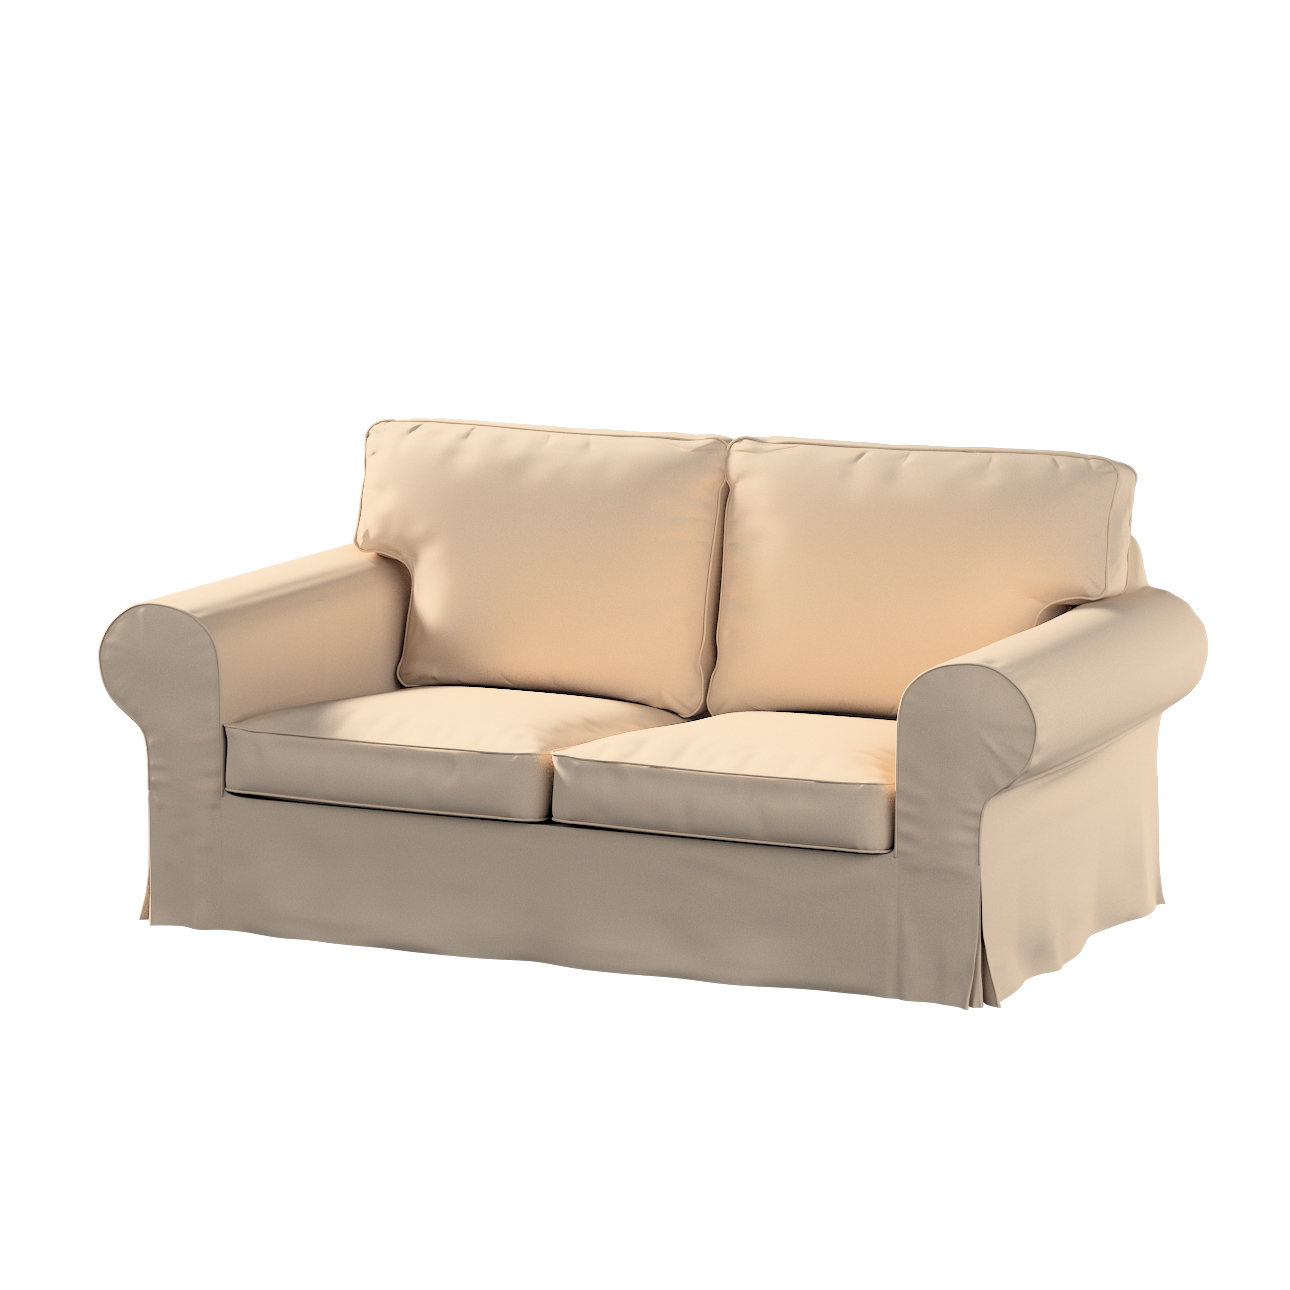 Bezug für Ektorp 2-Sitzer Schlafsofa NEUES Modell, creme-beige, Sofabezug f günstig online kaufen